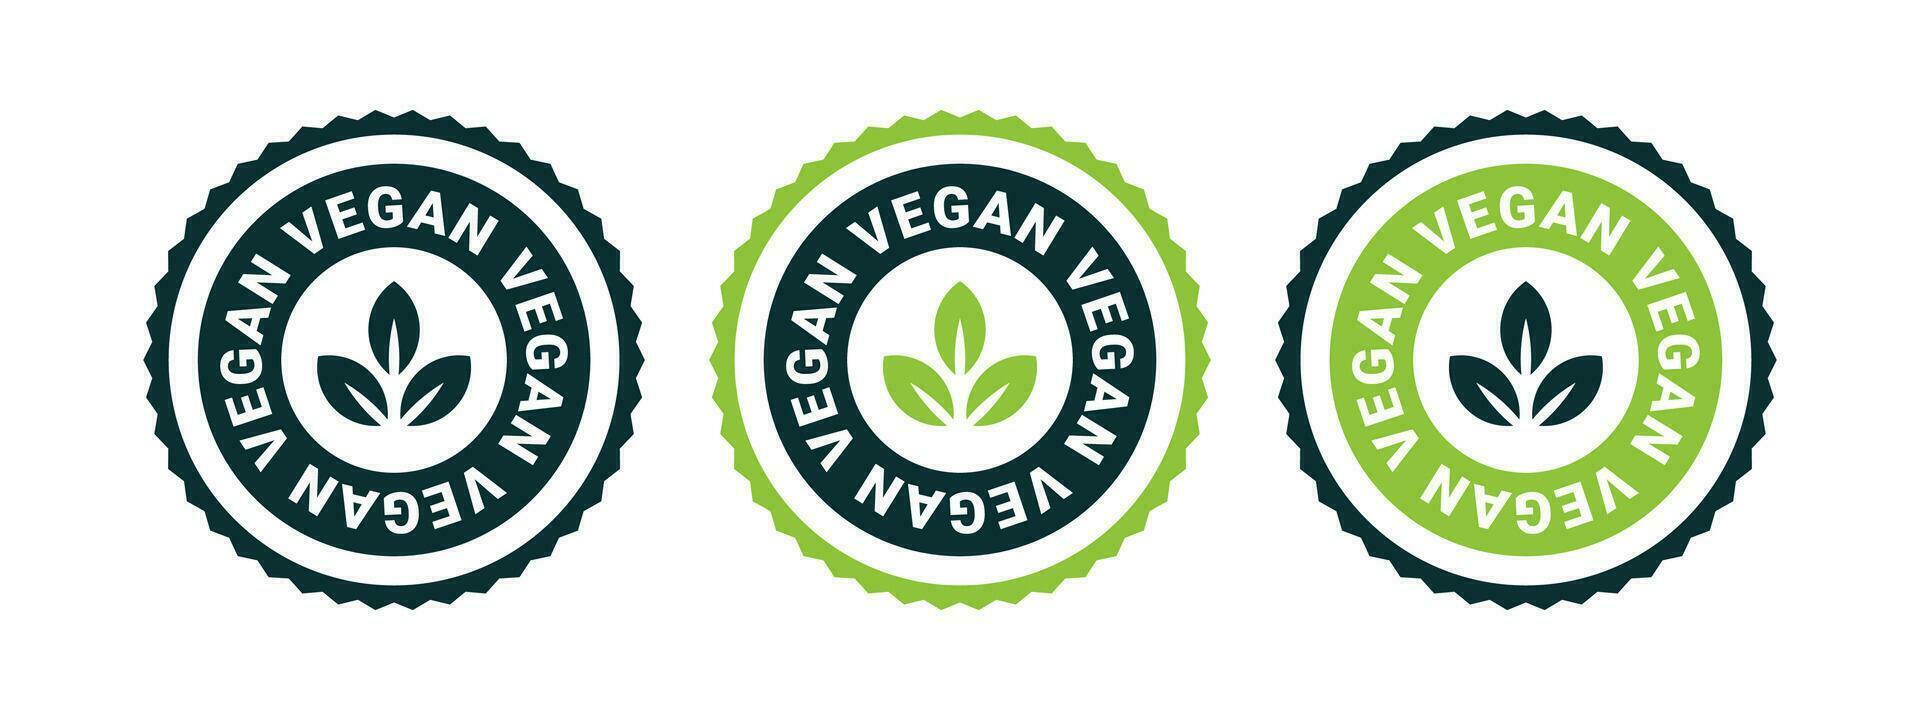 vegano ícones. vegano Distintivos ou rótulos. natural e orgânico produtos. vetor escalável gráficos